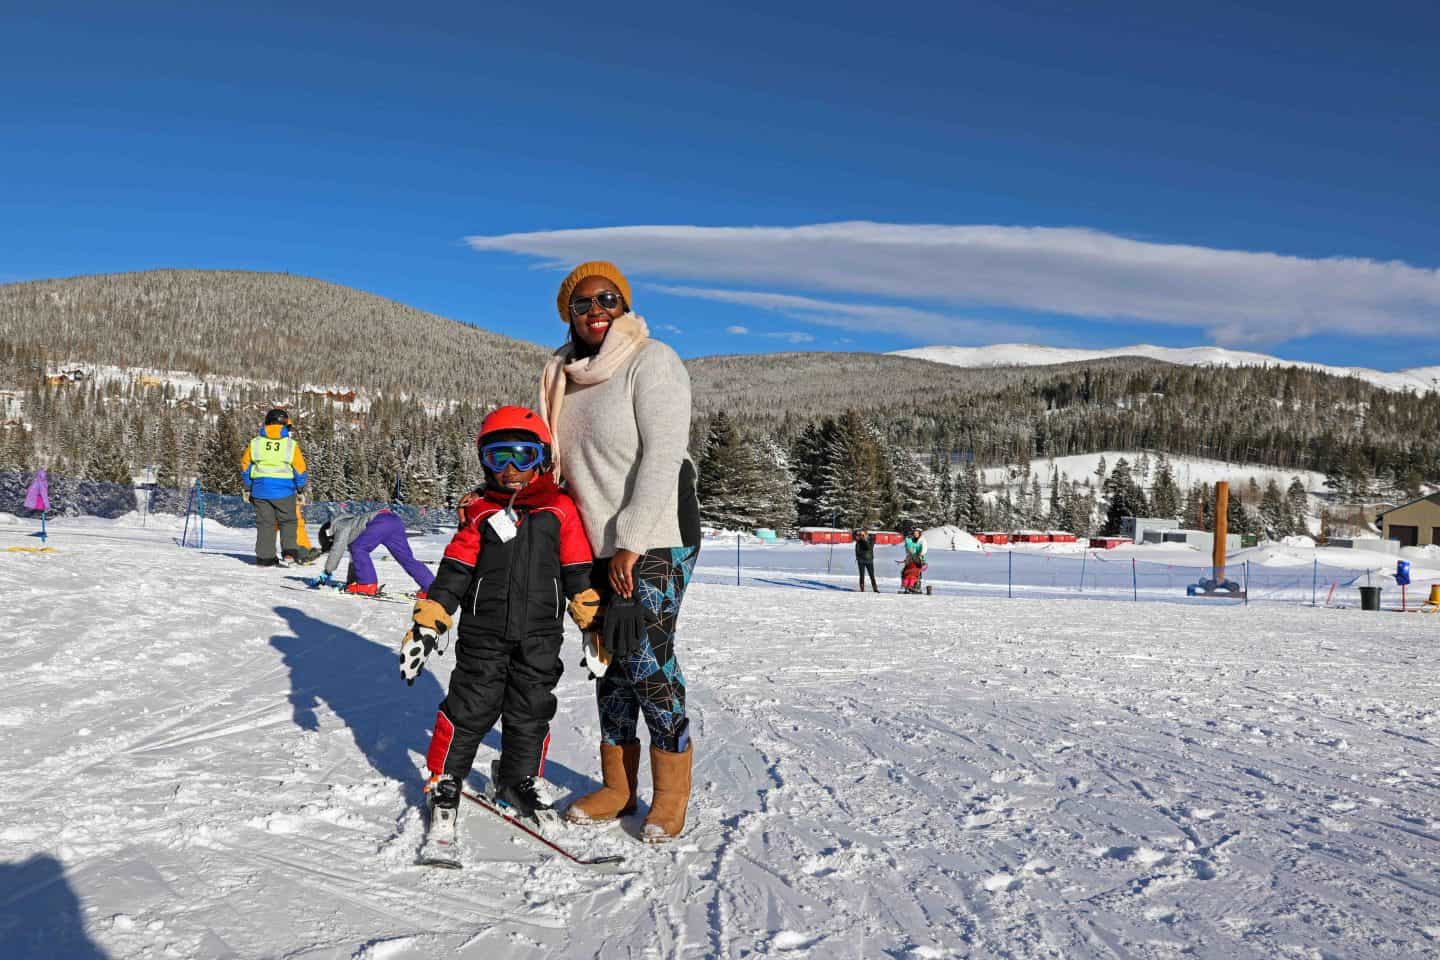 ski holiday tips